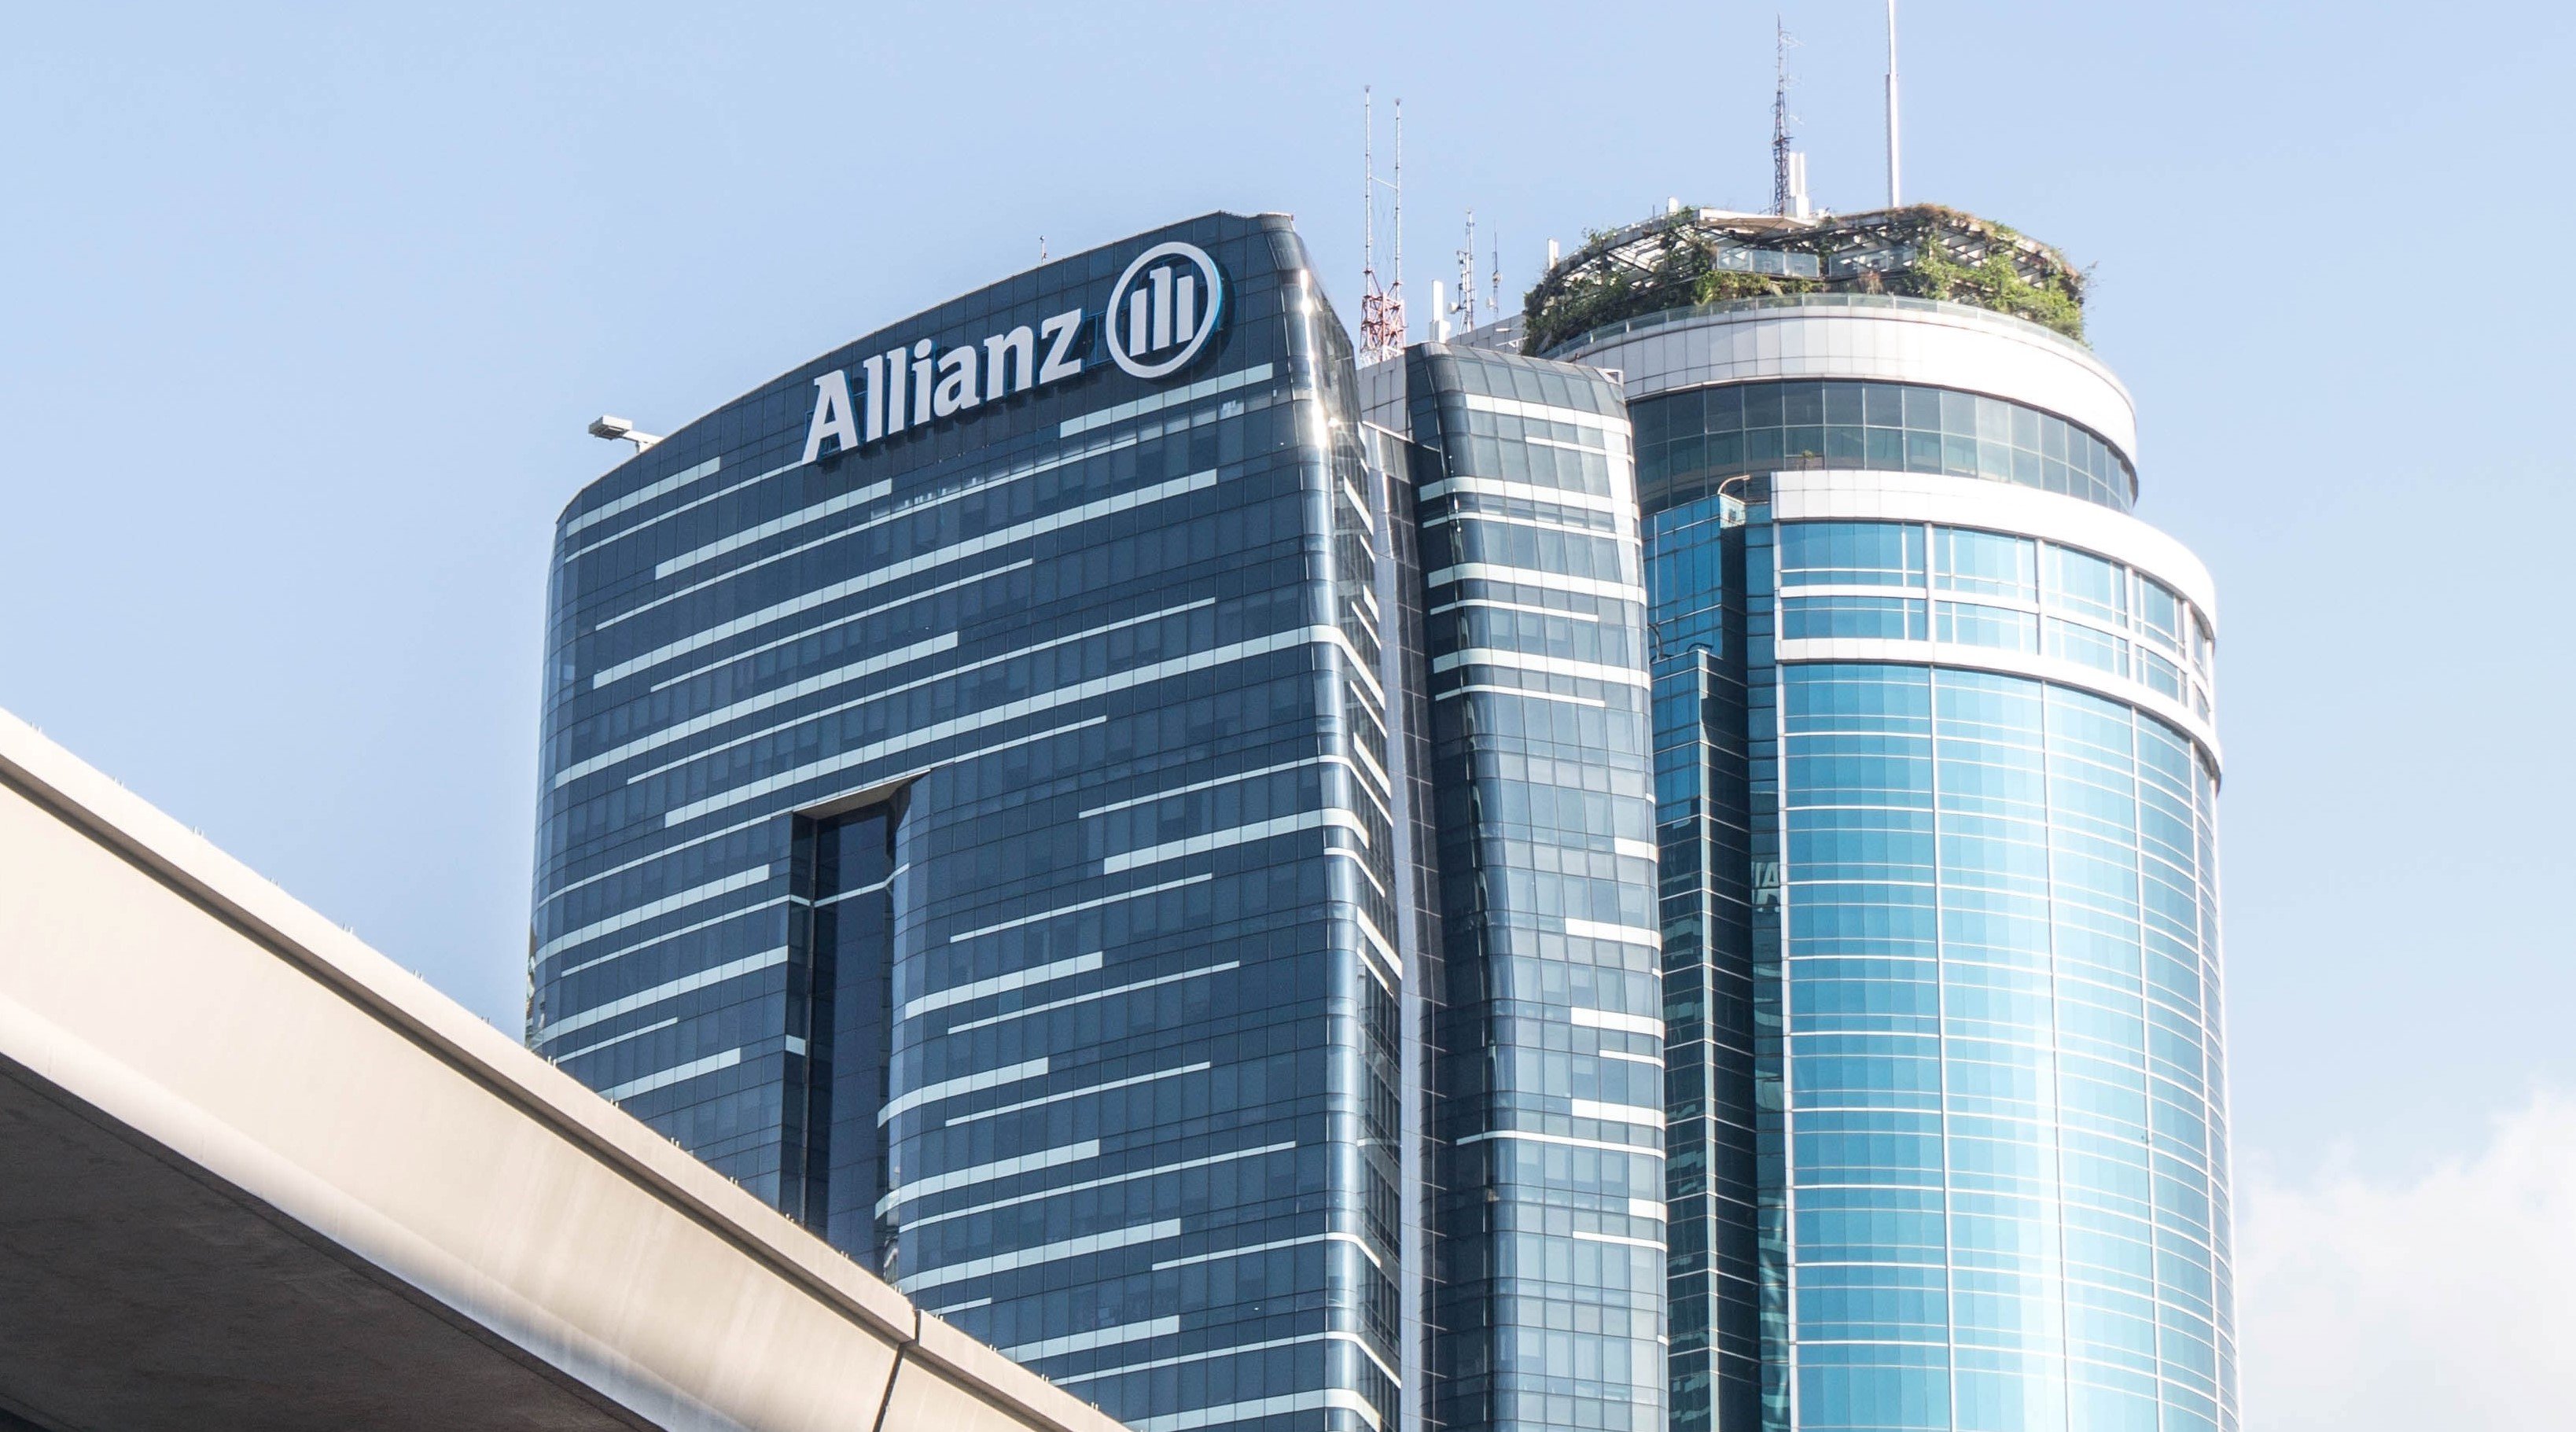 Allianz Building Germany